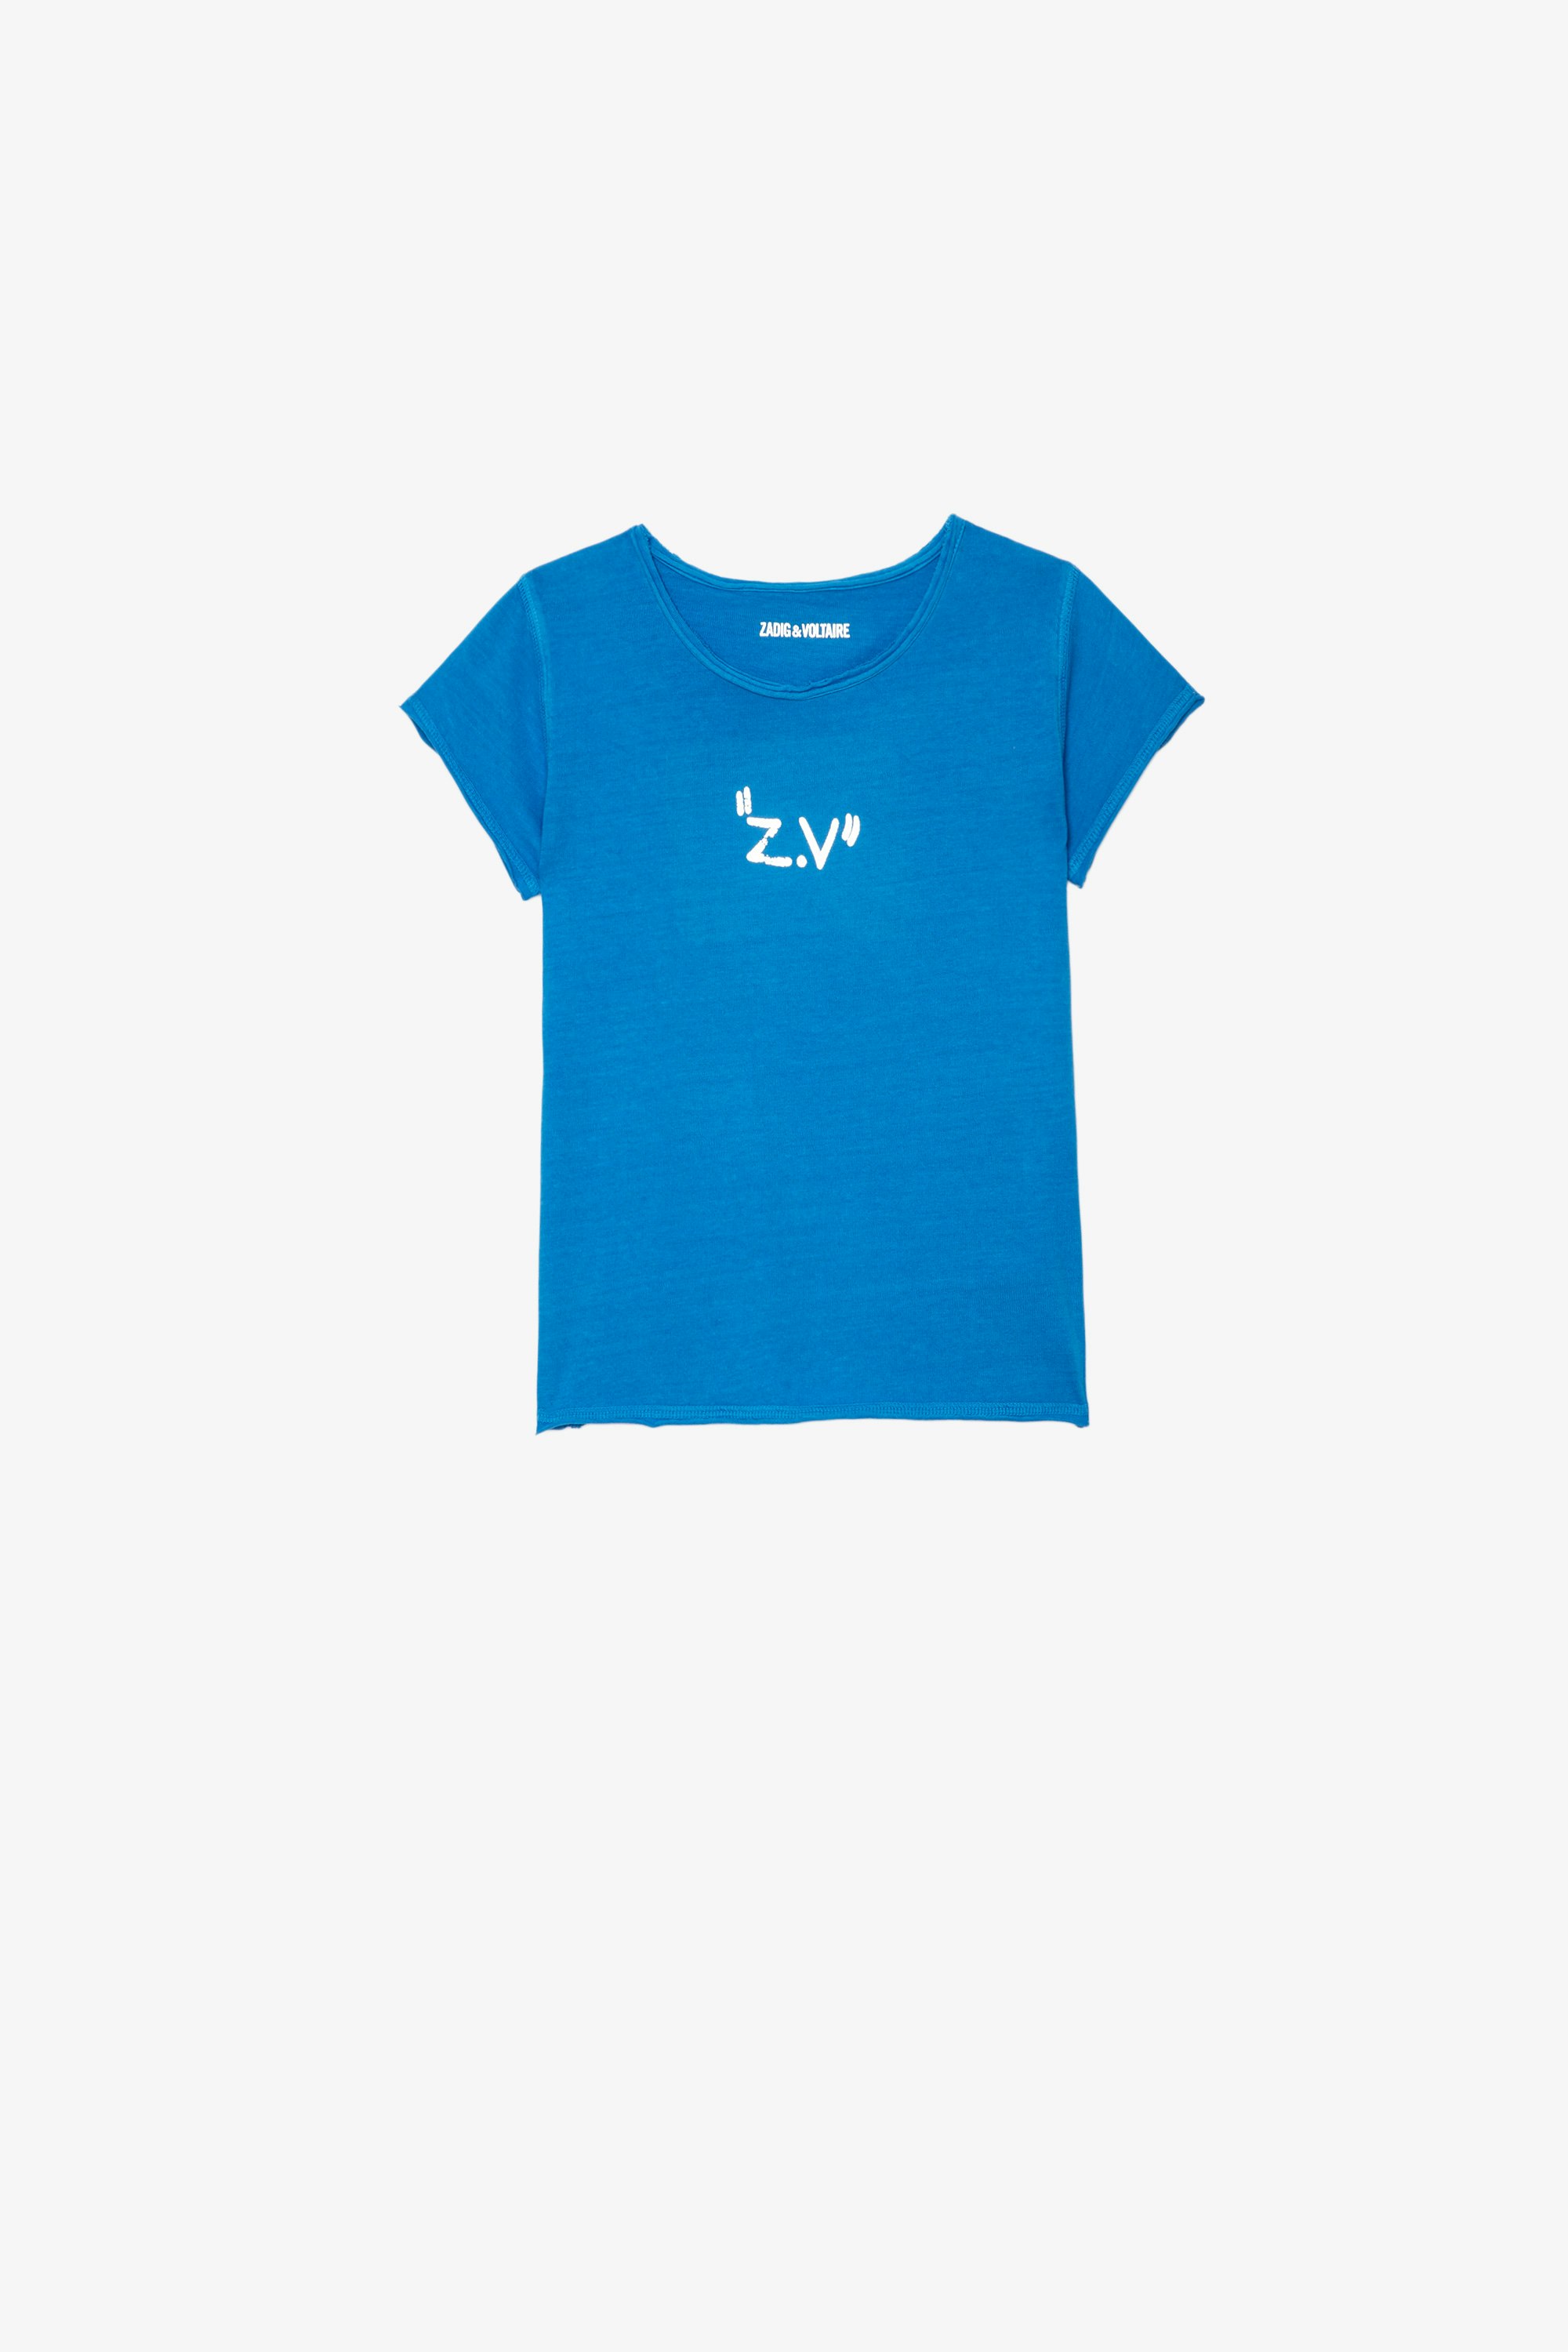 Camiseta Amber Infantil Camiseta azul de punto de algodón infantil con estampados con efecto metalizado